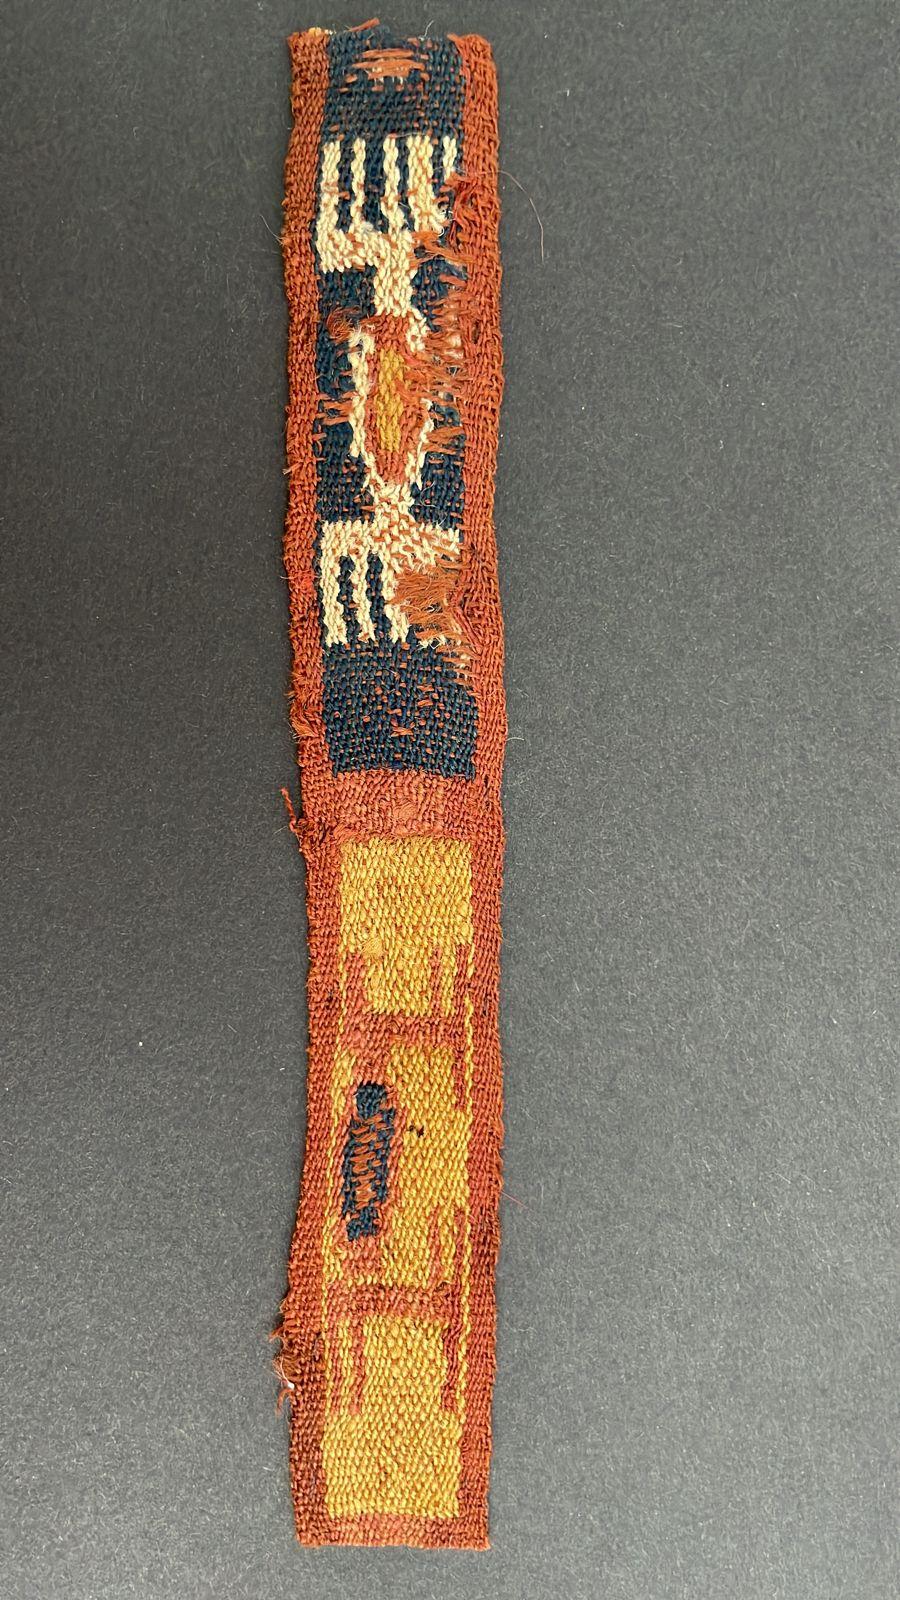 Fragment de textile Pre-Columbian. C'est un émerveillement de contempler des antiquités telles qu'un textile Pre-Columbian, une œuvre d'art authentique qui a été préservée pendant des siècles et qui survit génération après génération. Les textiles